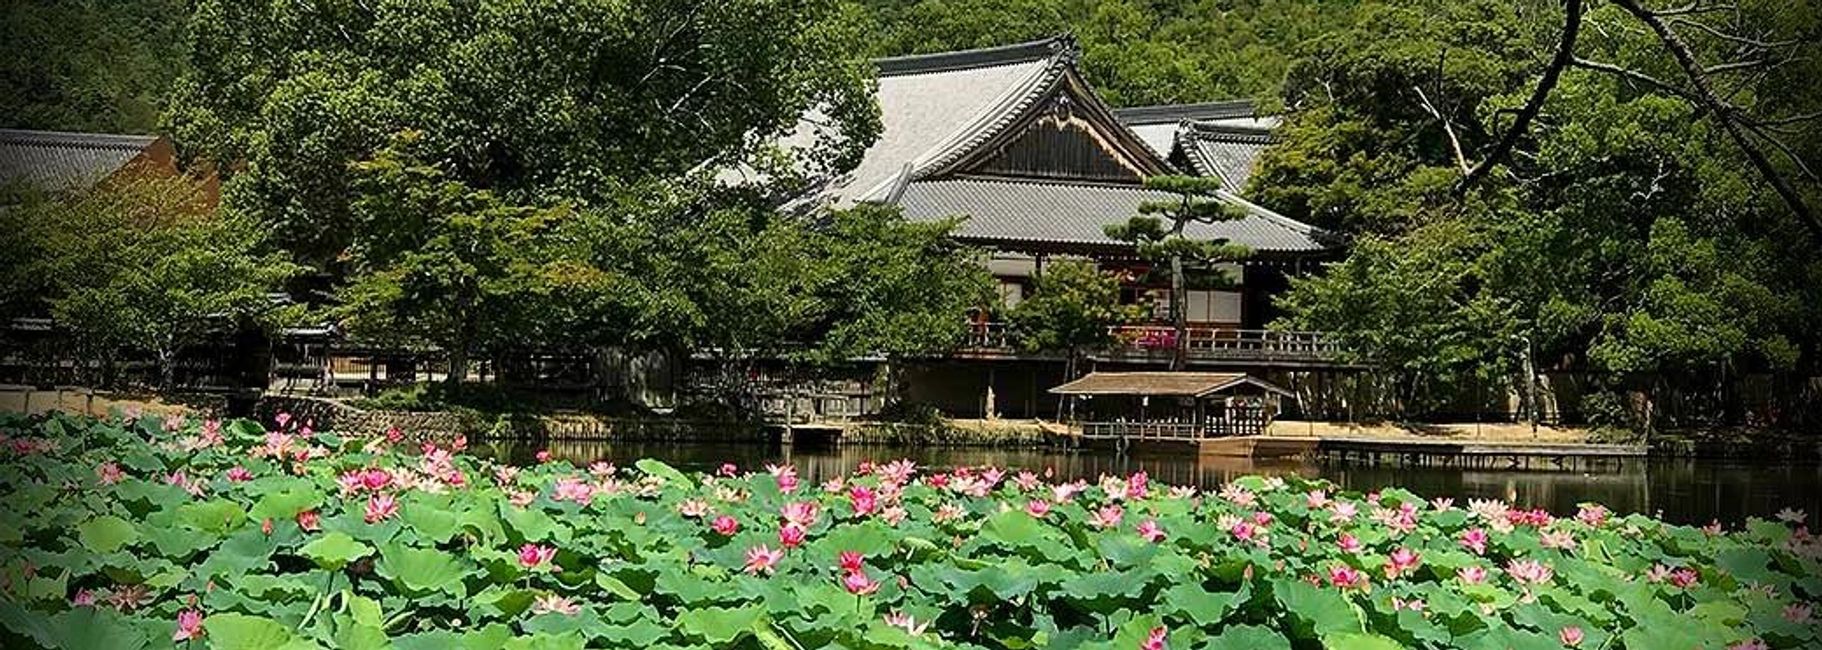 Daikakuji Temple & Lotus Floral Display of Osawa Pond; See: https://www.daikakuji.or.jp/english/